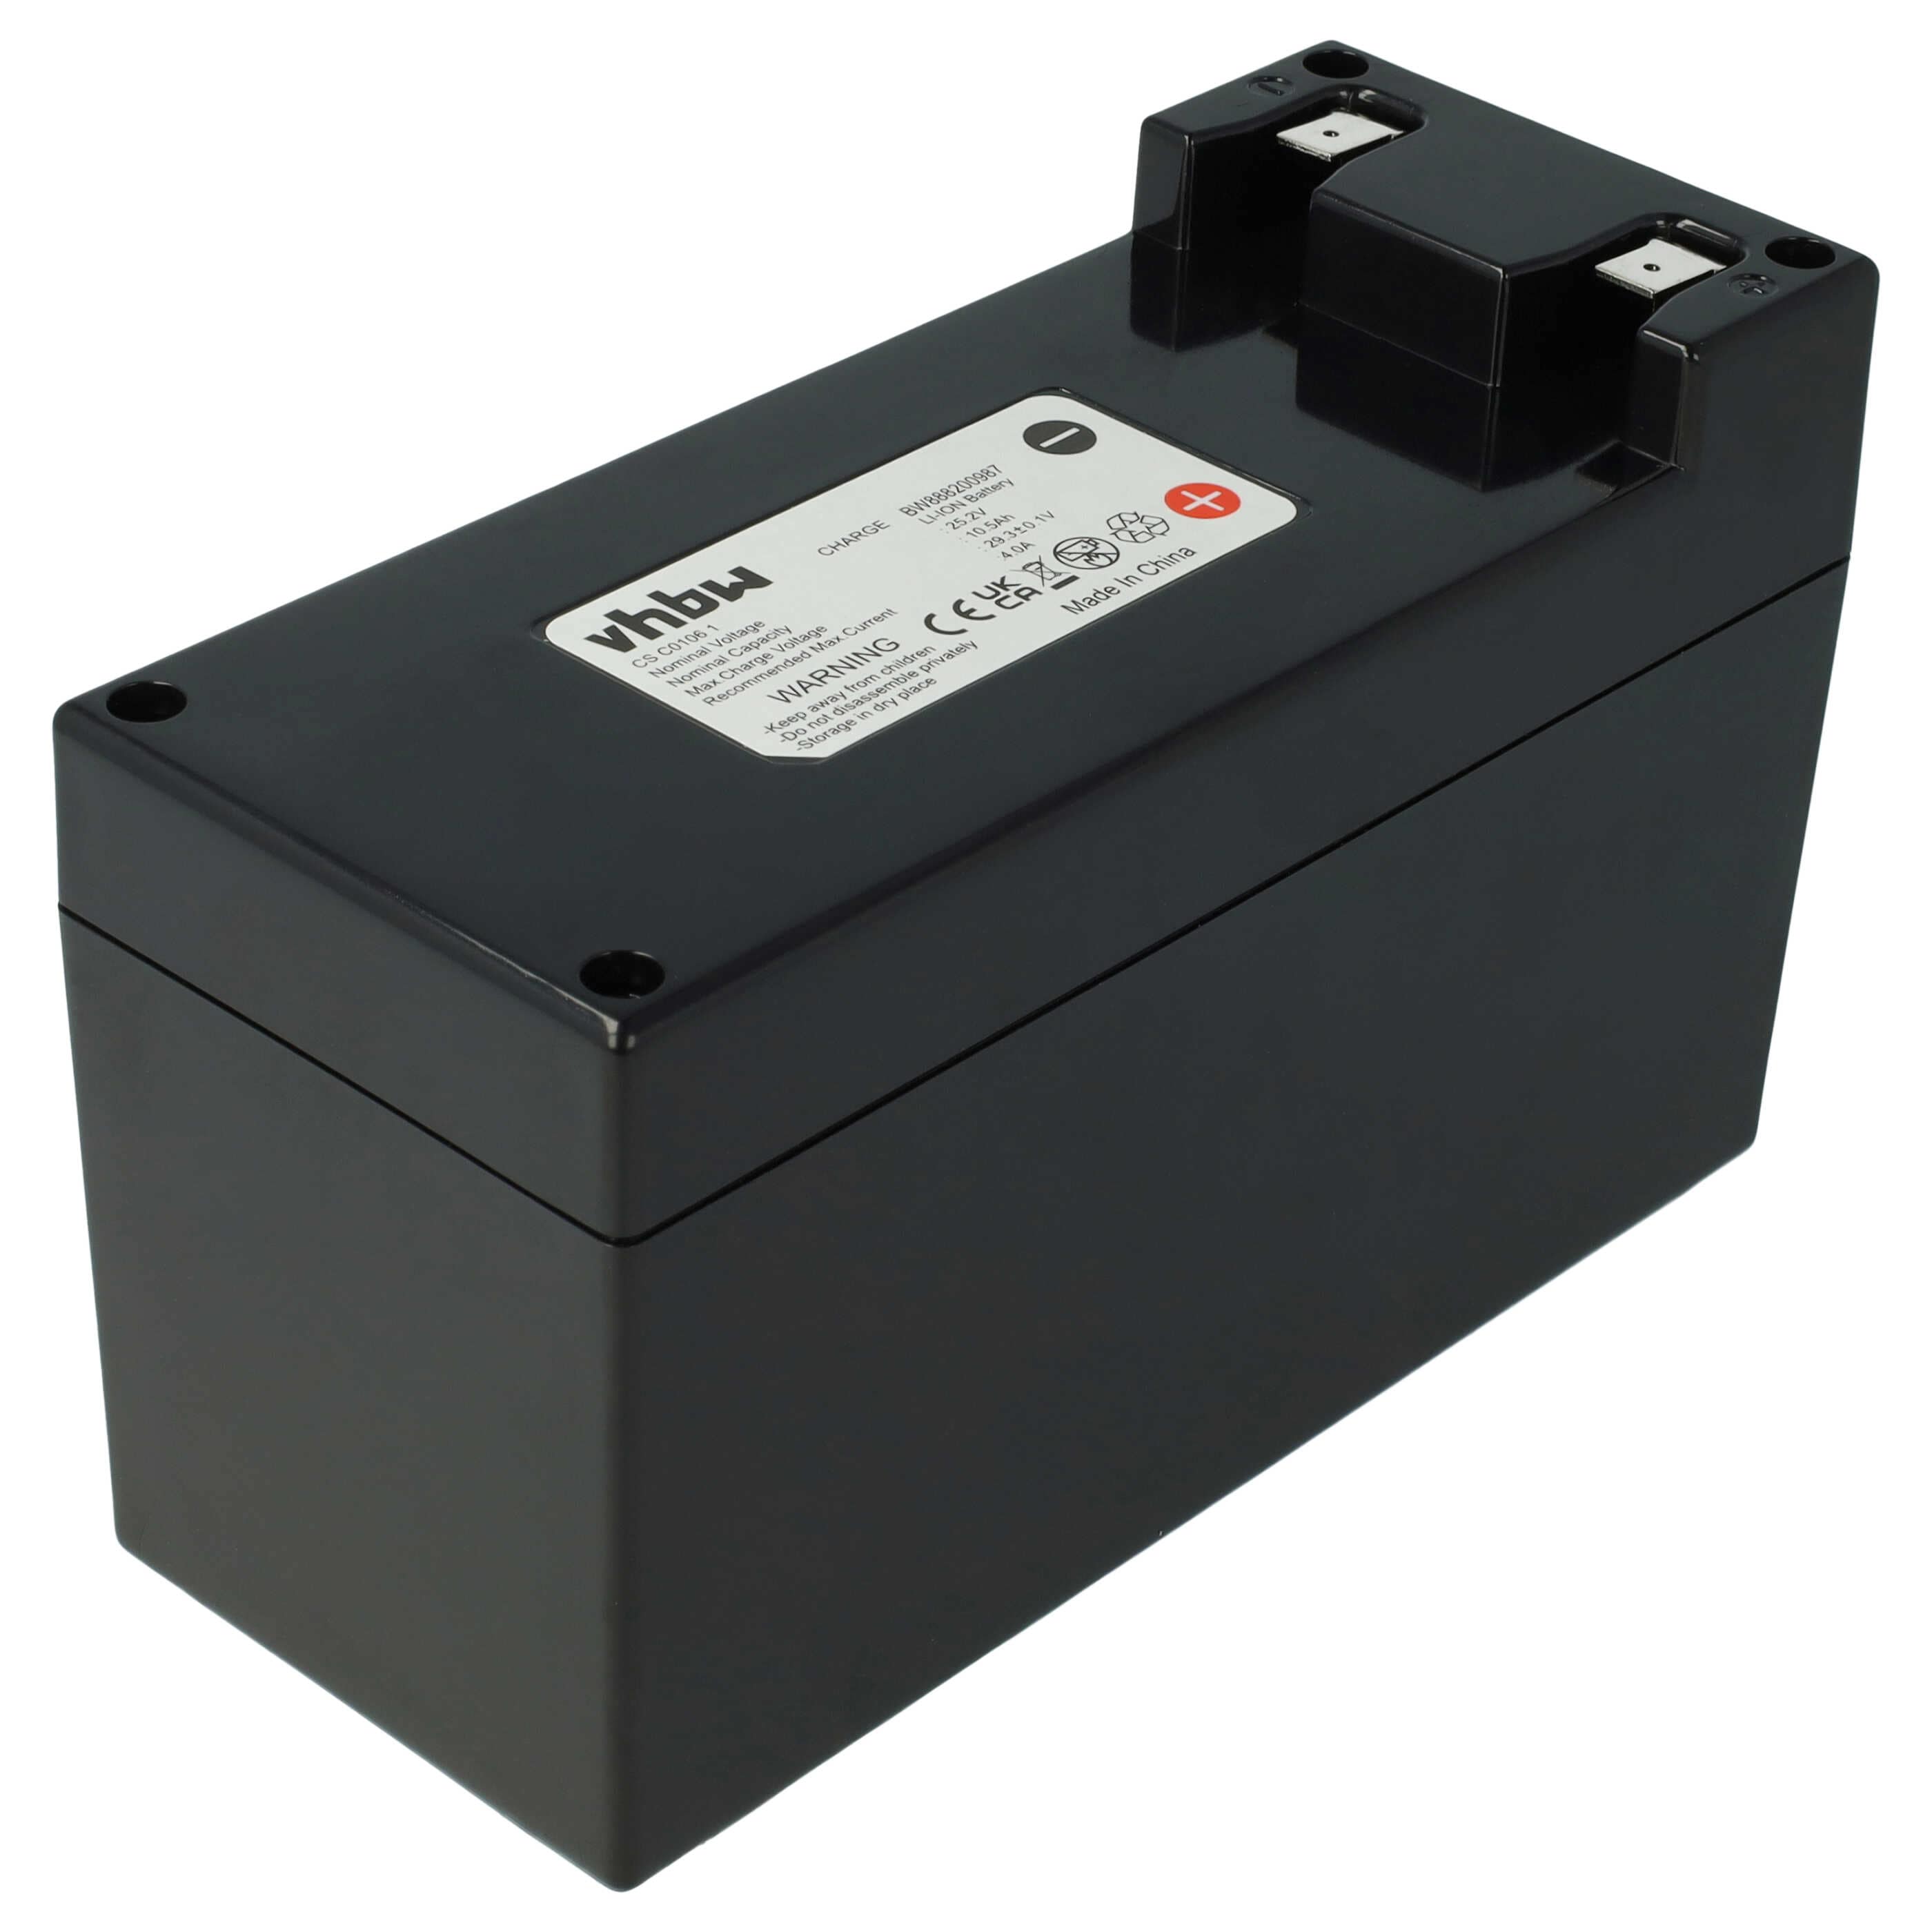 Akumulator do robota koszącego zamiennik Stiga 1126-9138-01, 1126-9105-01 - 10200 mAh 25,2 V Li-Ion, czarny